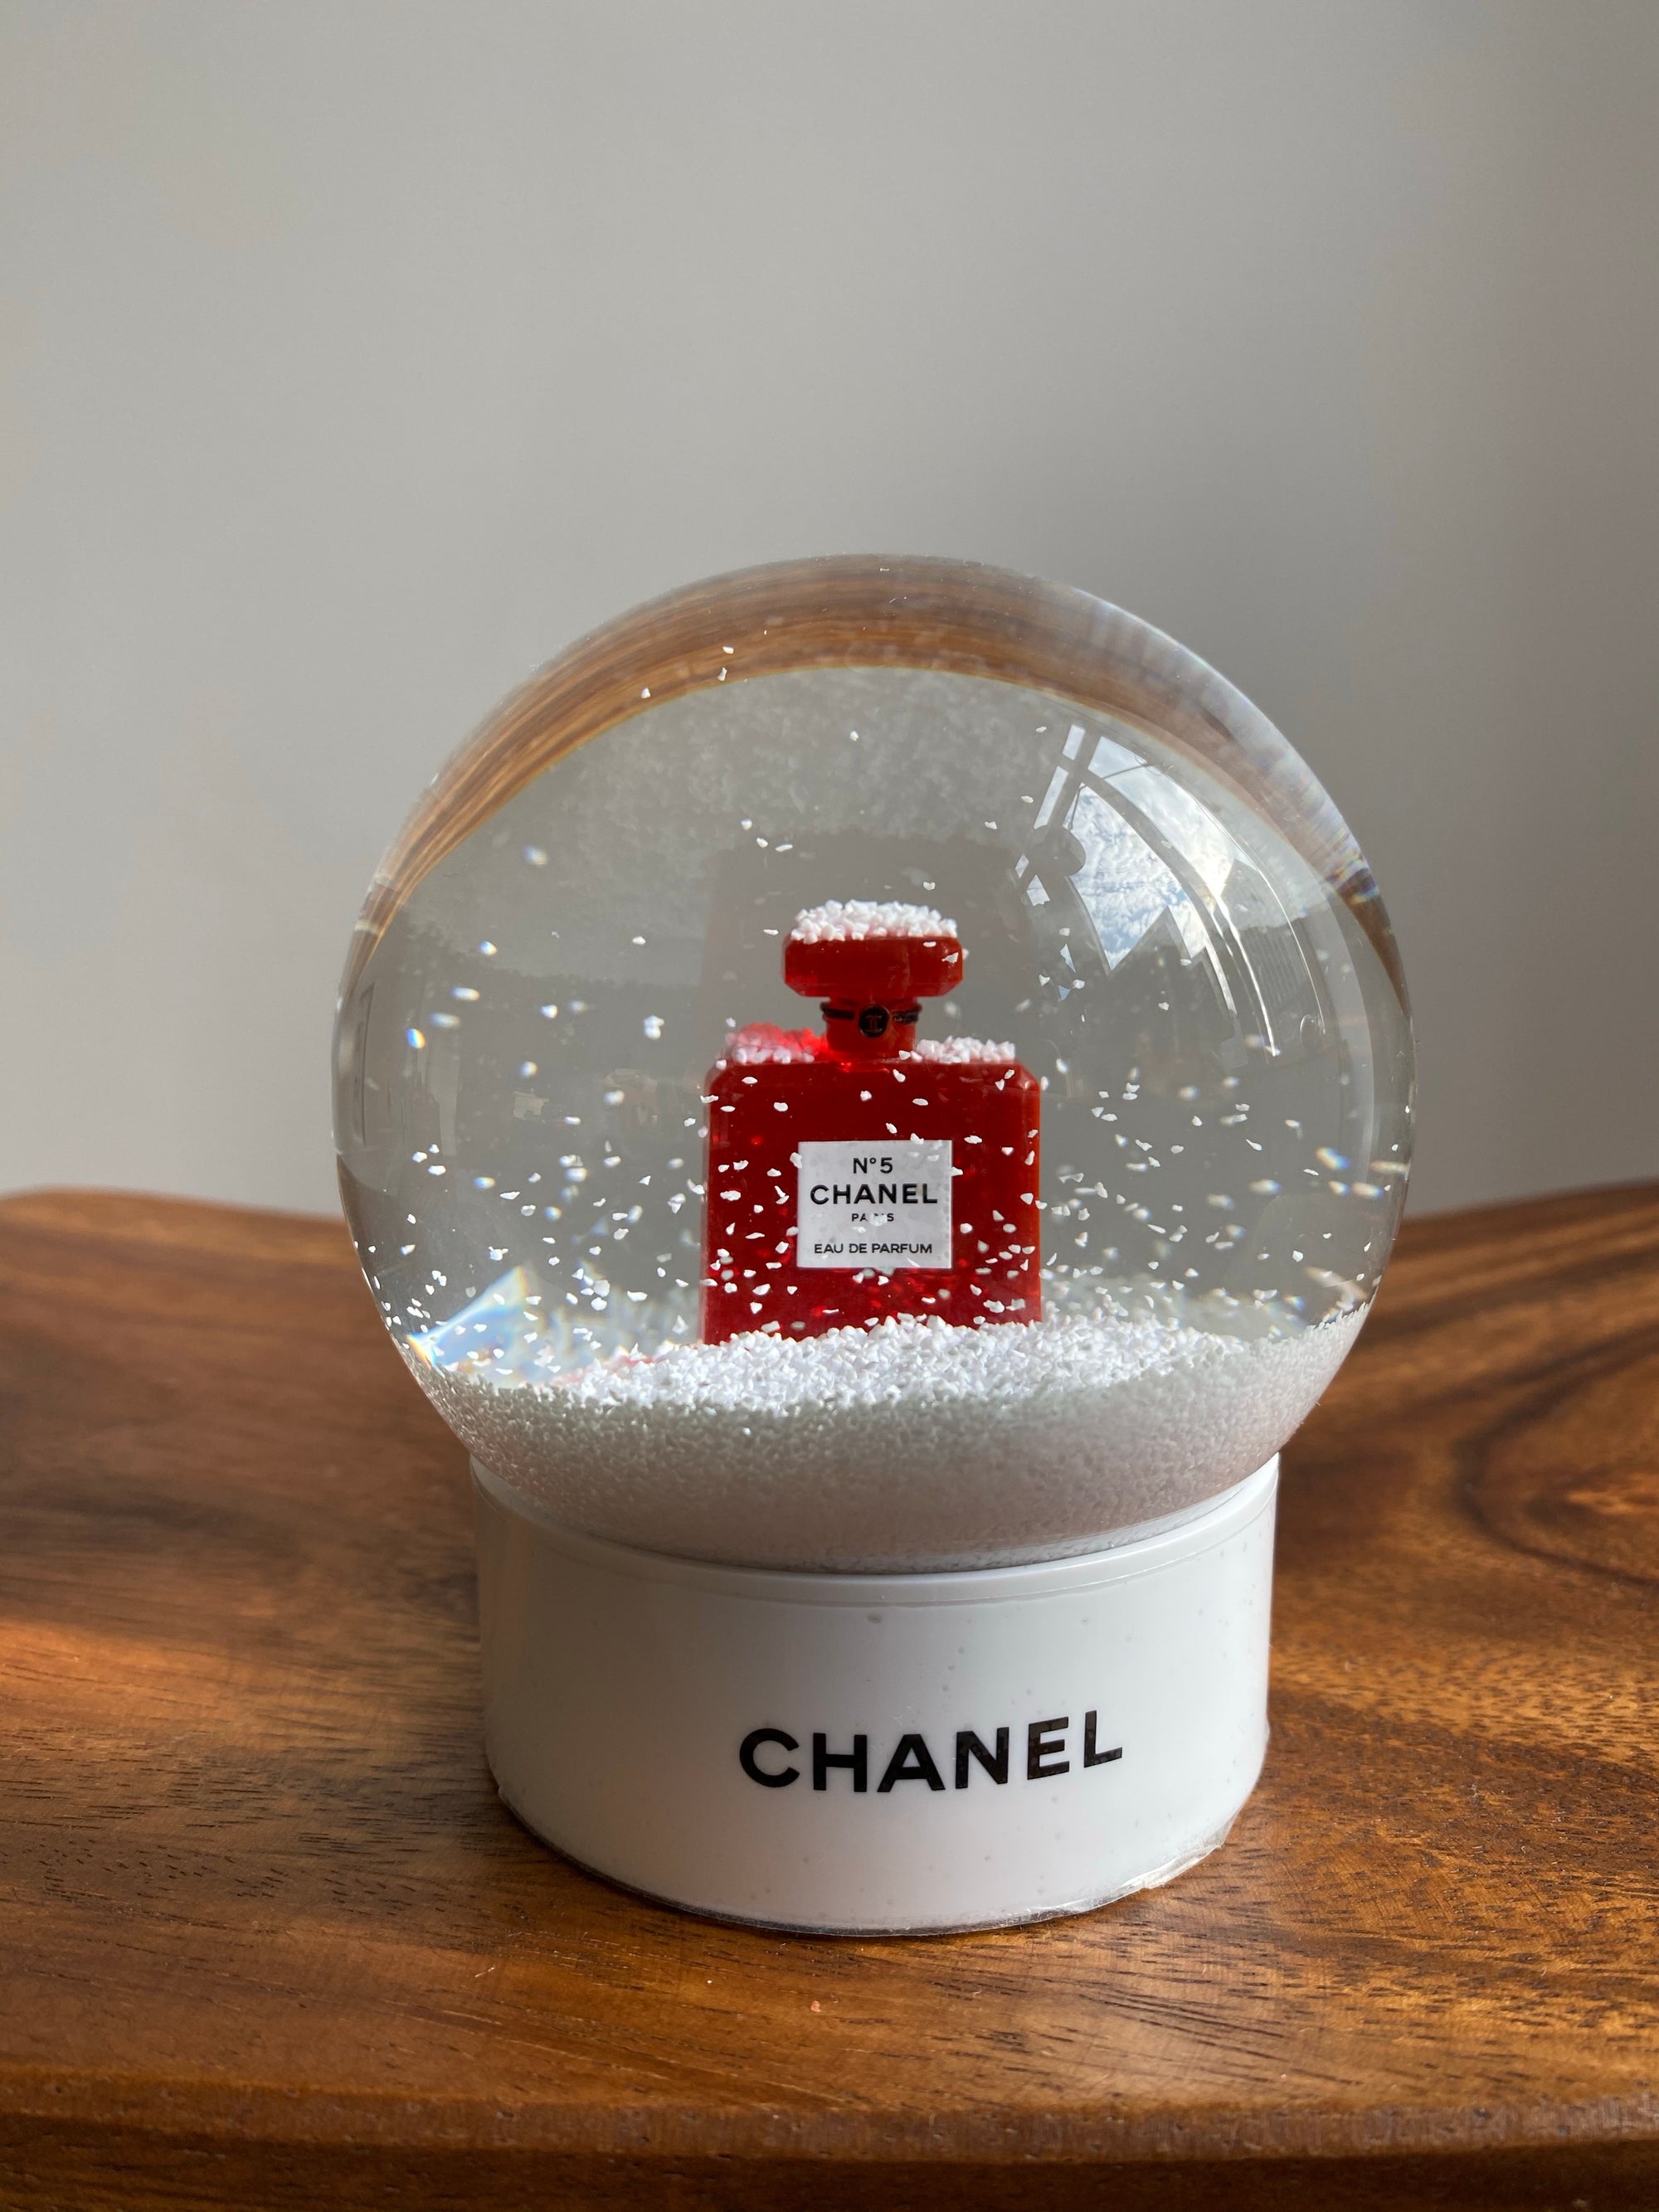 Chanel No. 5 Eau de Parfum 3.4 FL. OZ. / 100 ml Red Bottle Limited